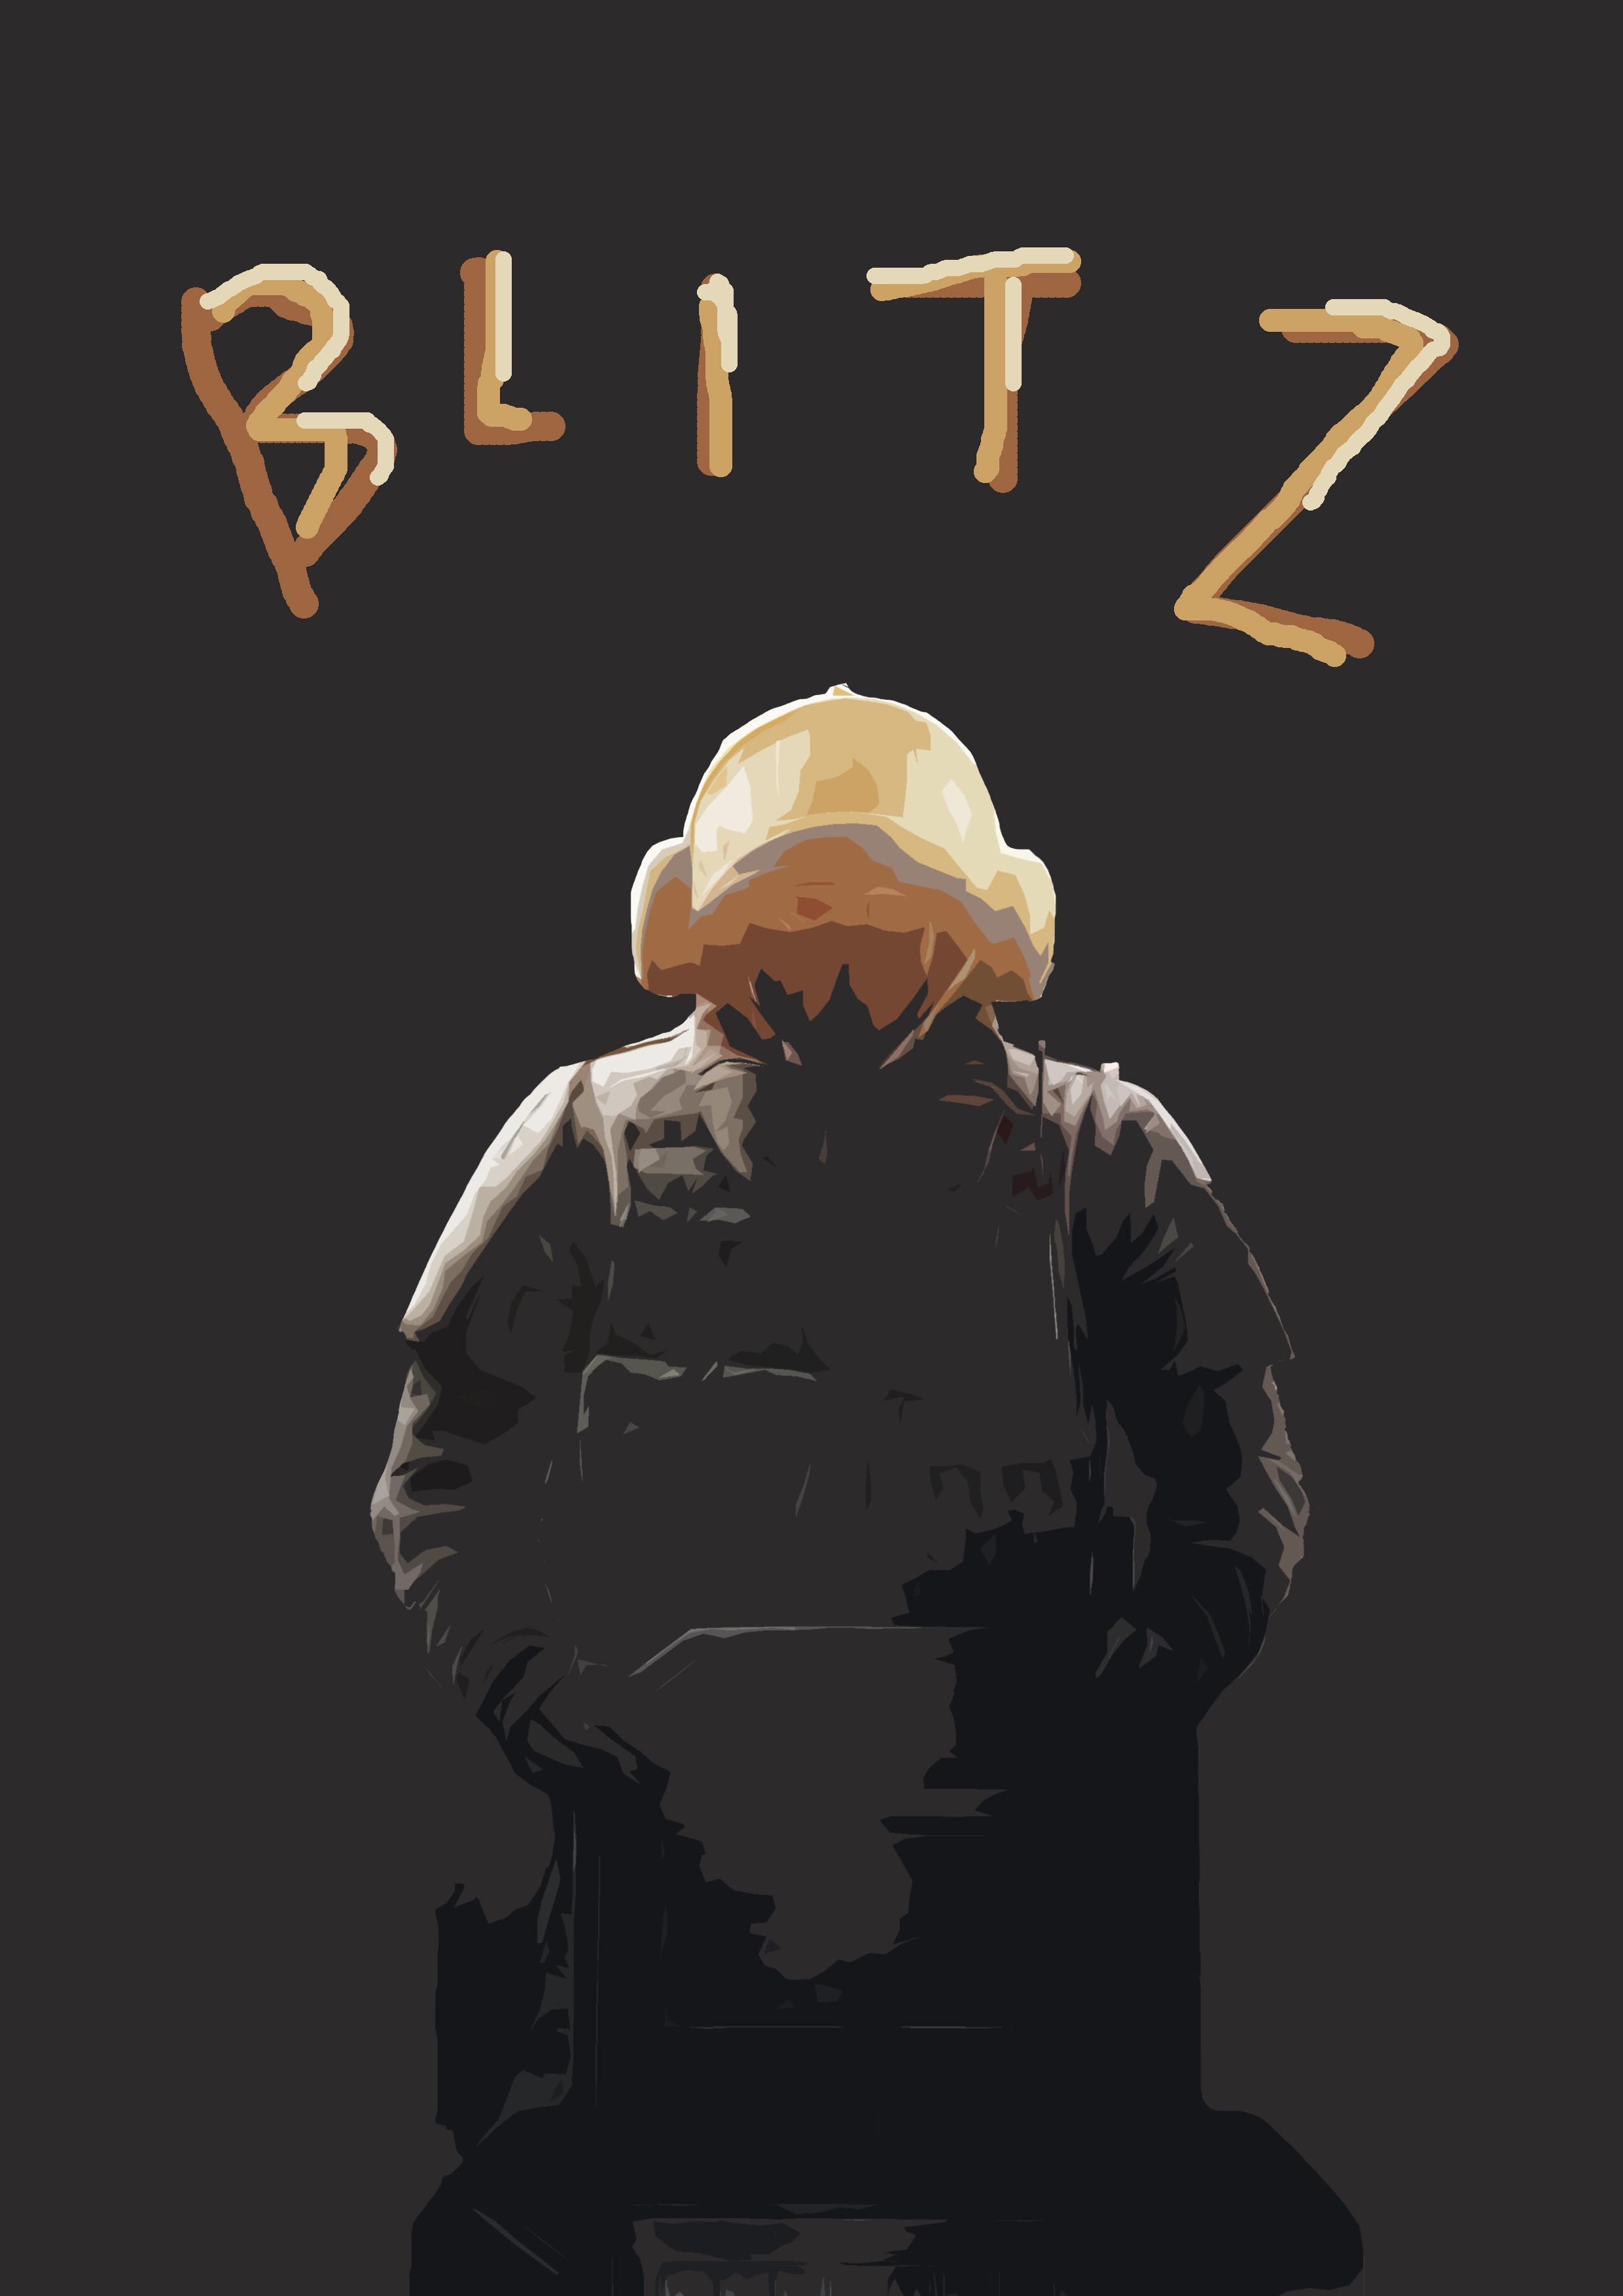 Blitz wallpaper for u